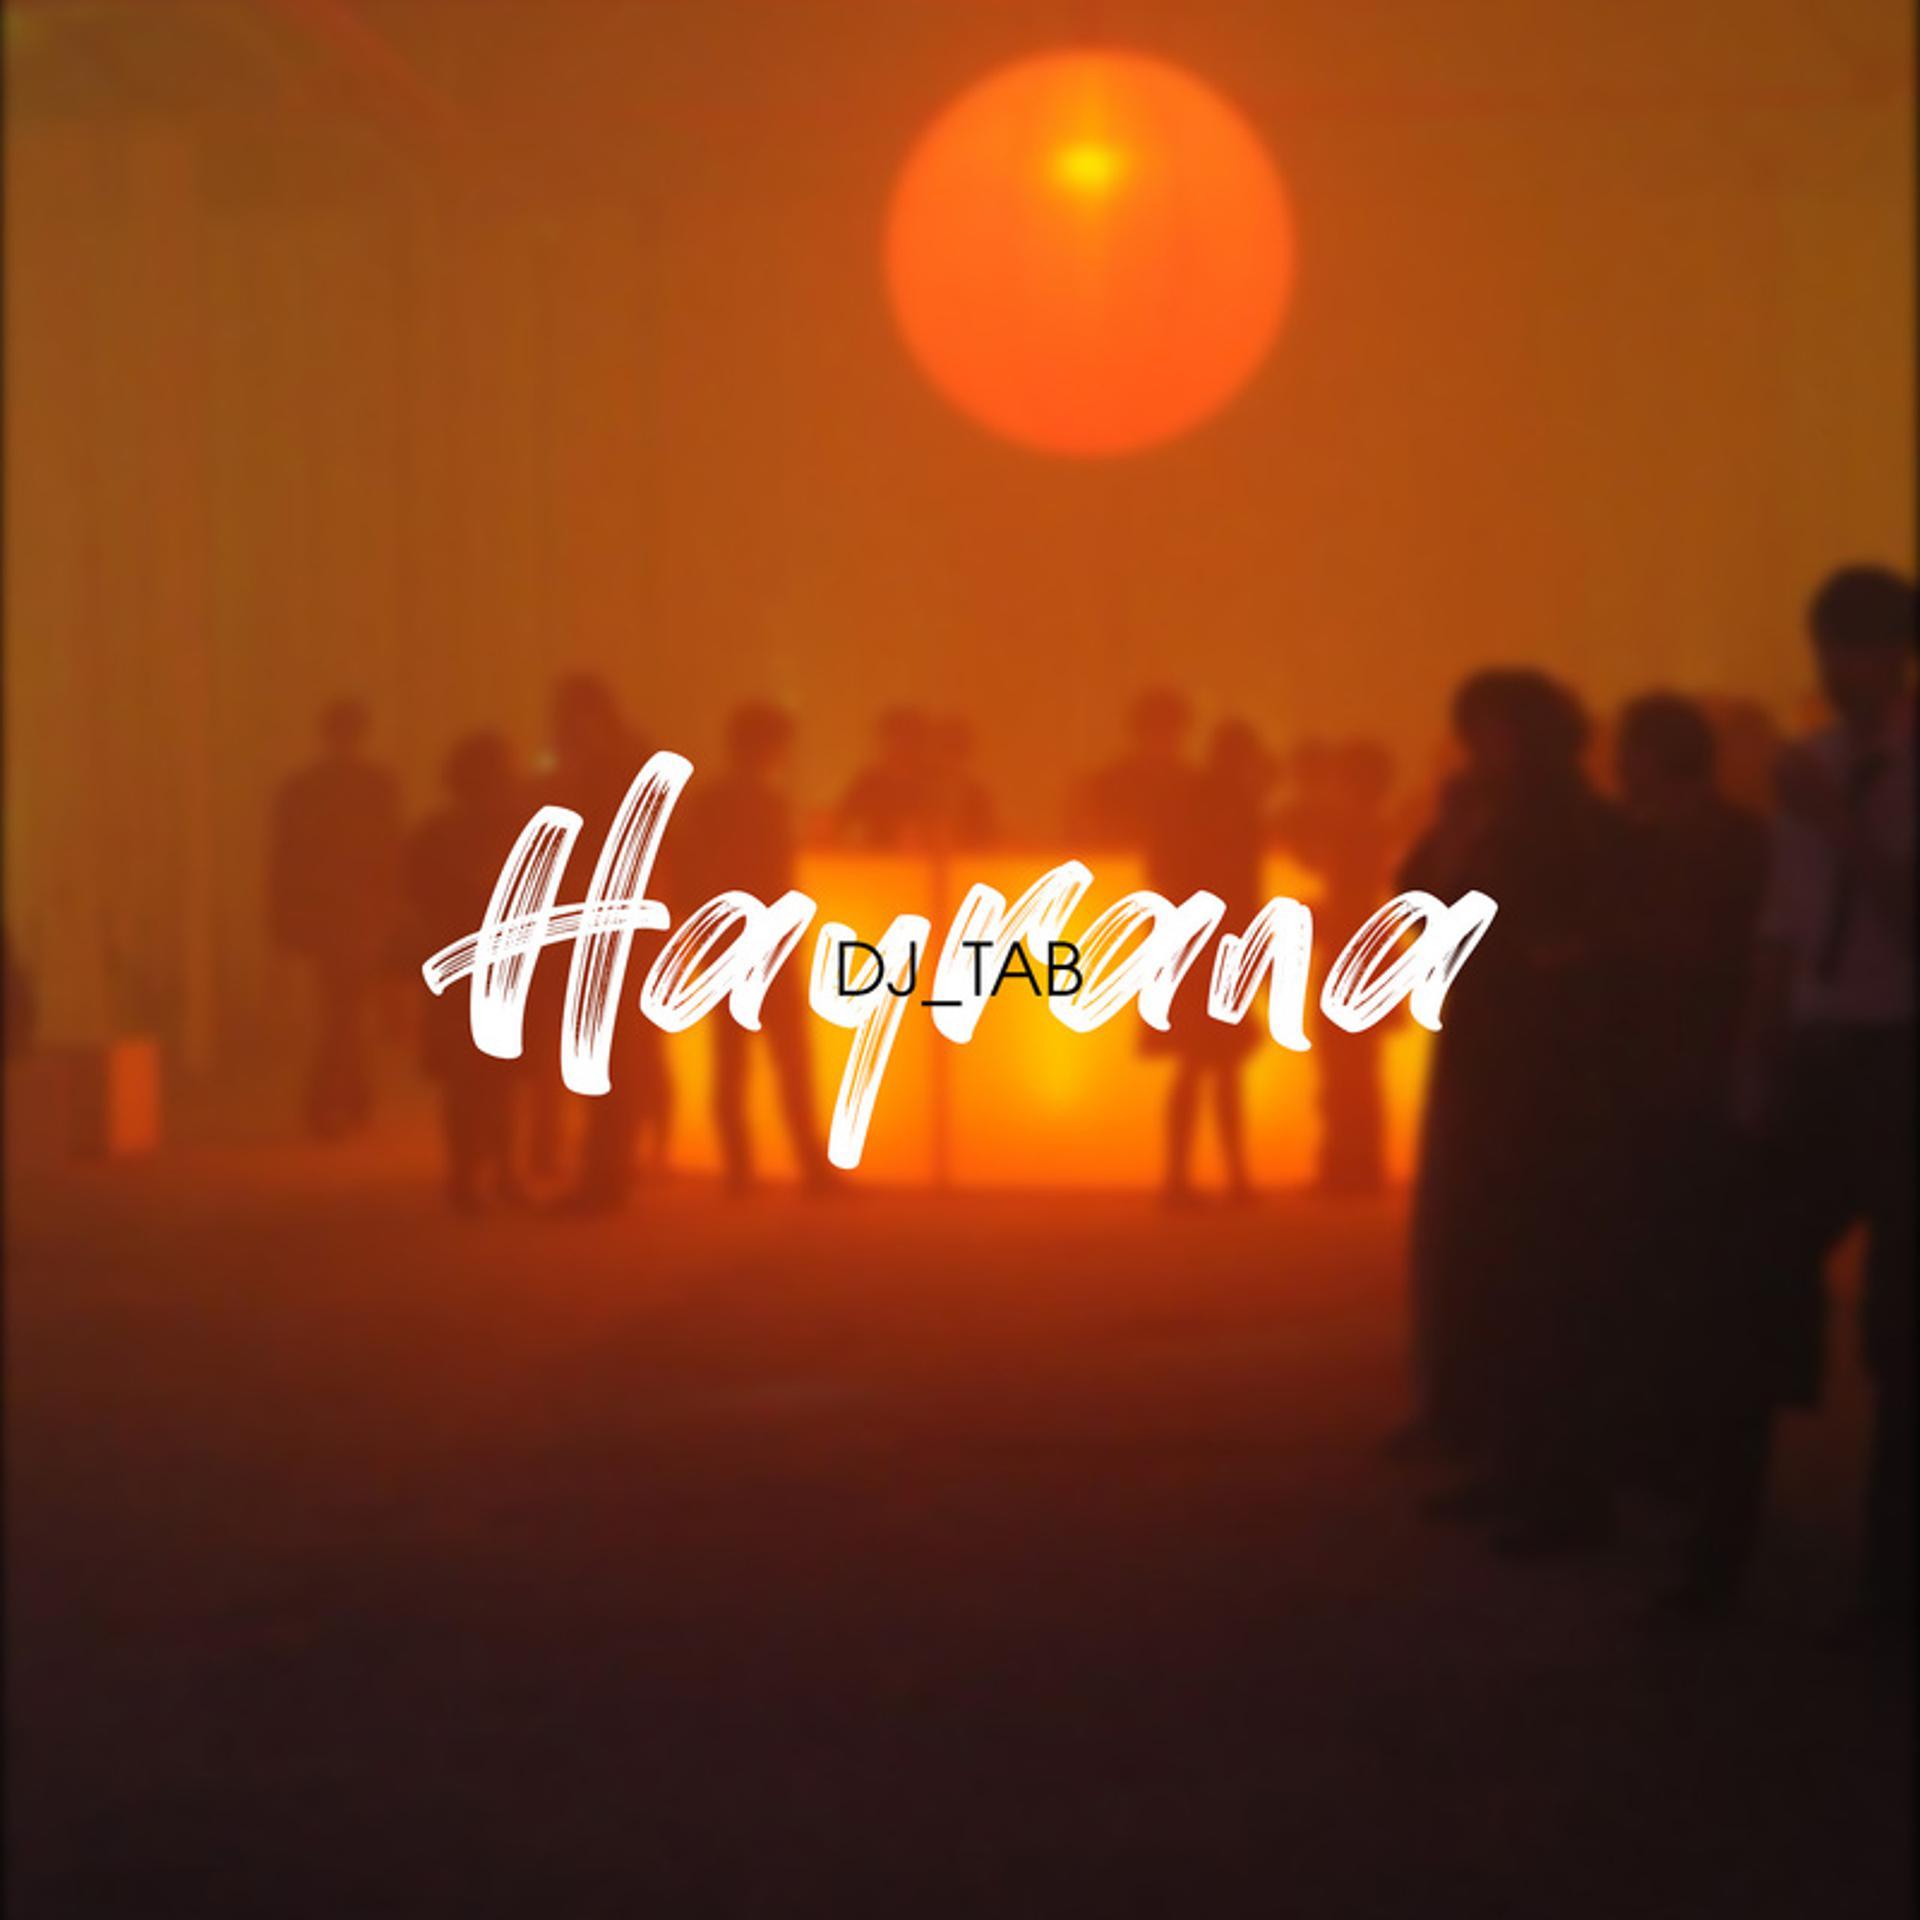 Постер альбома Hayrana